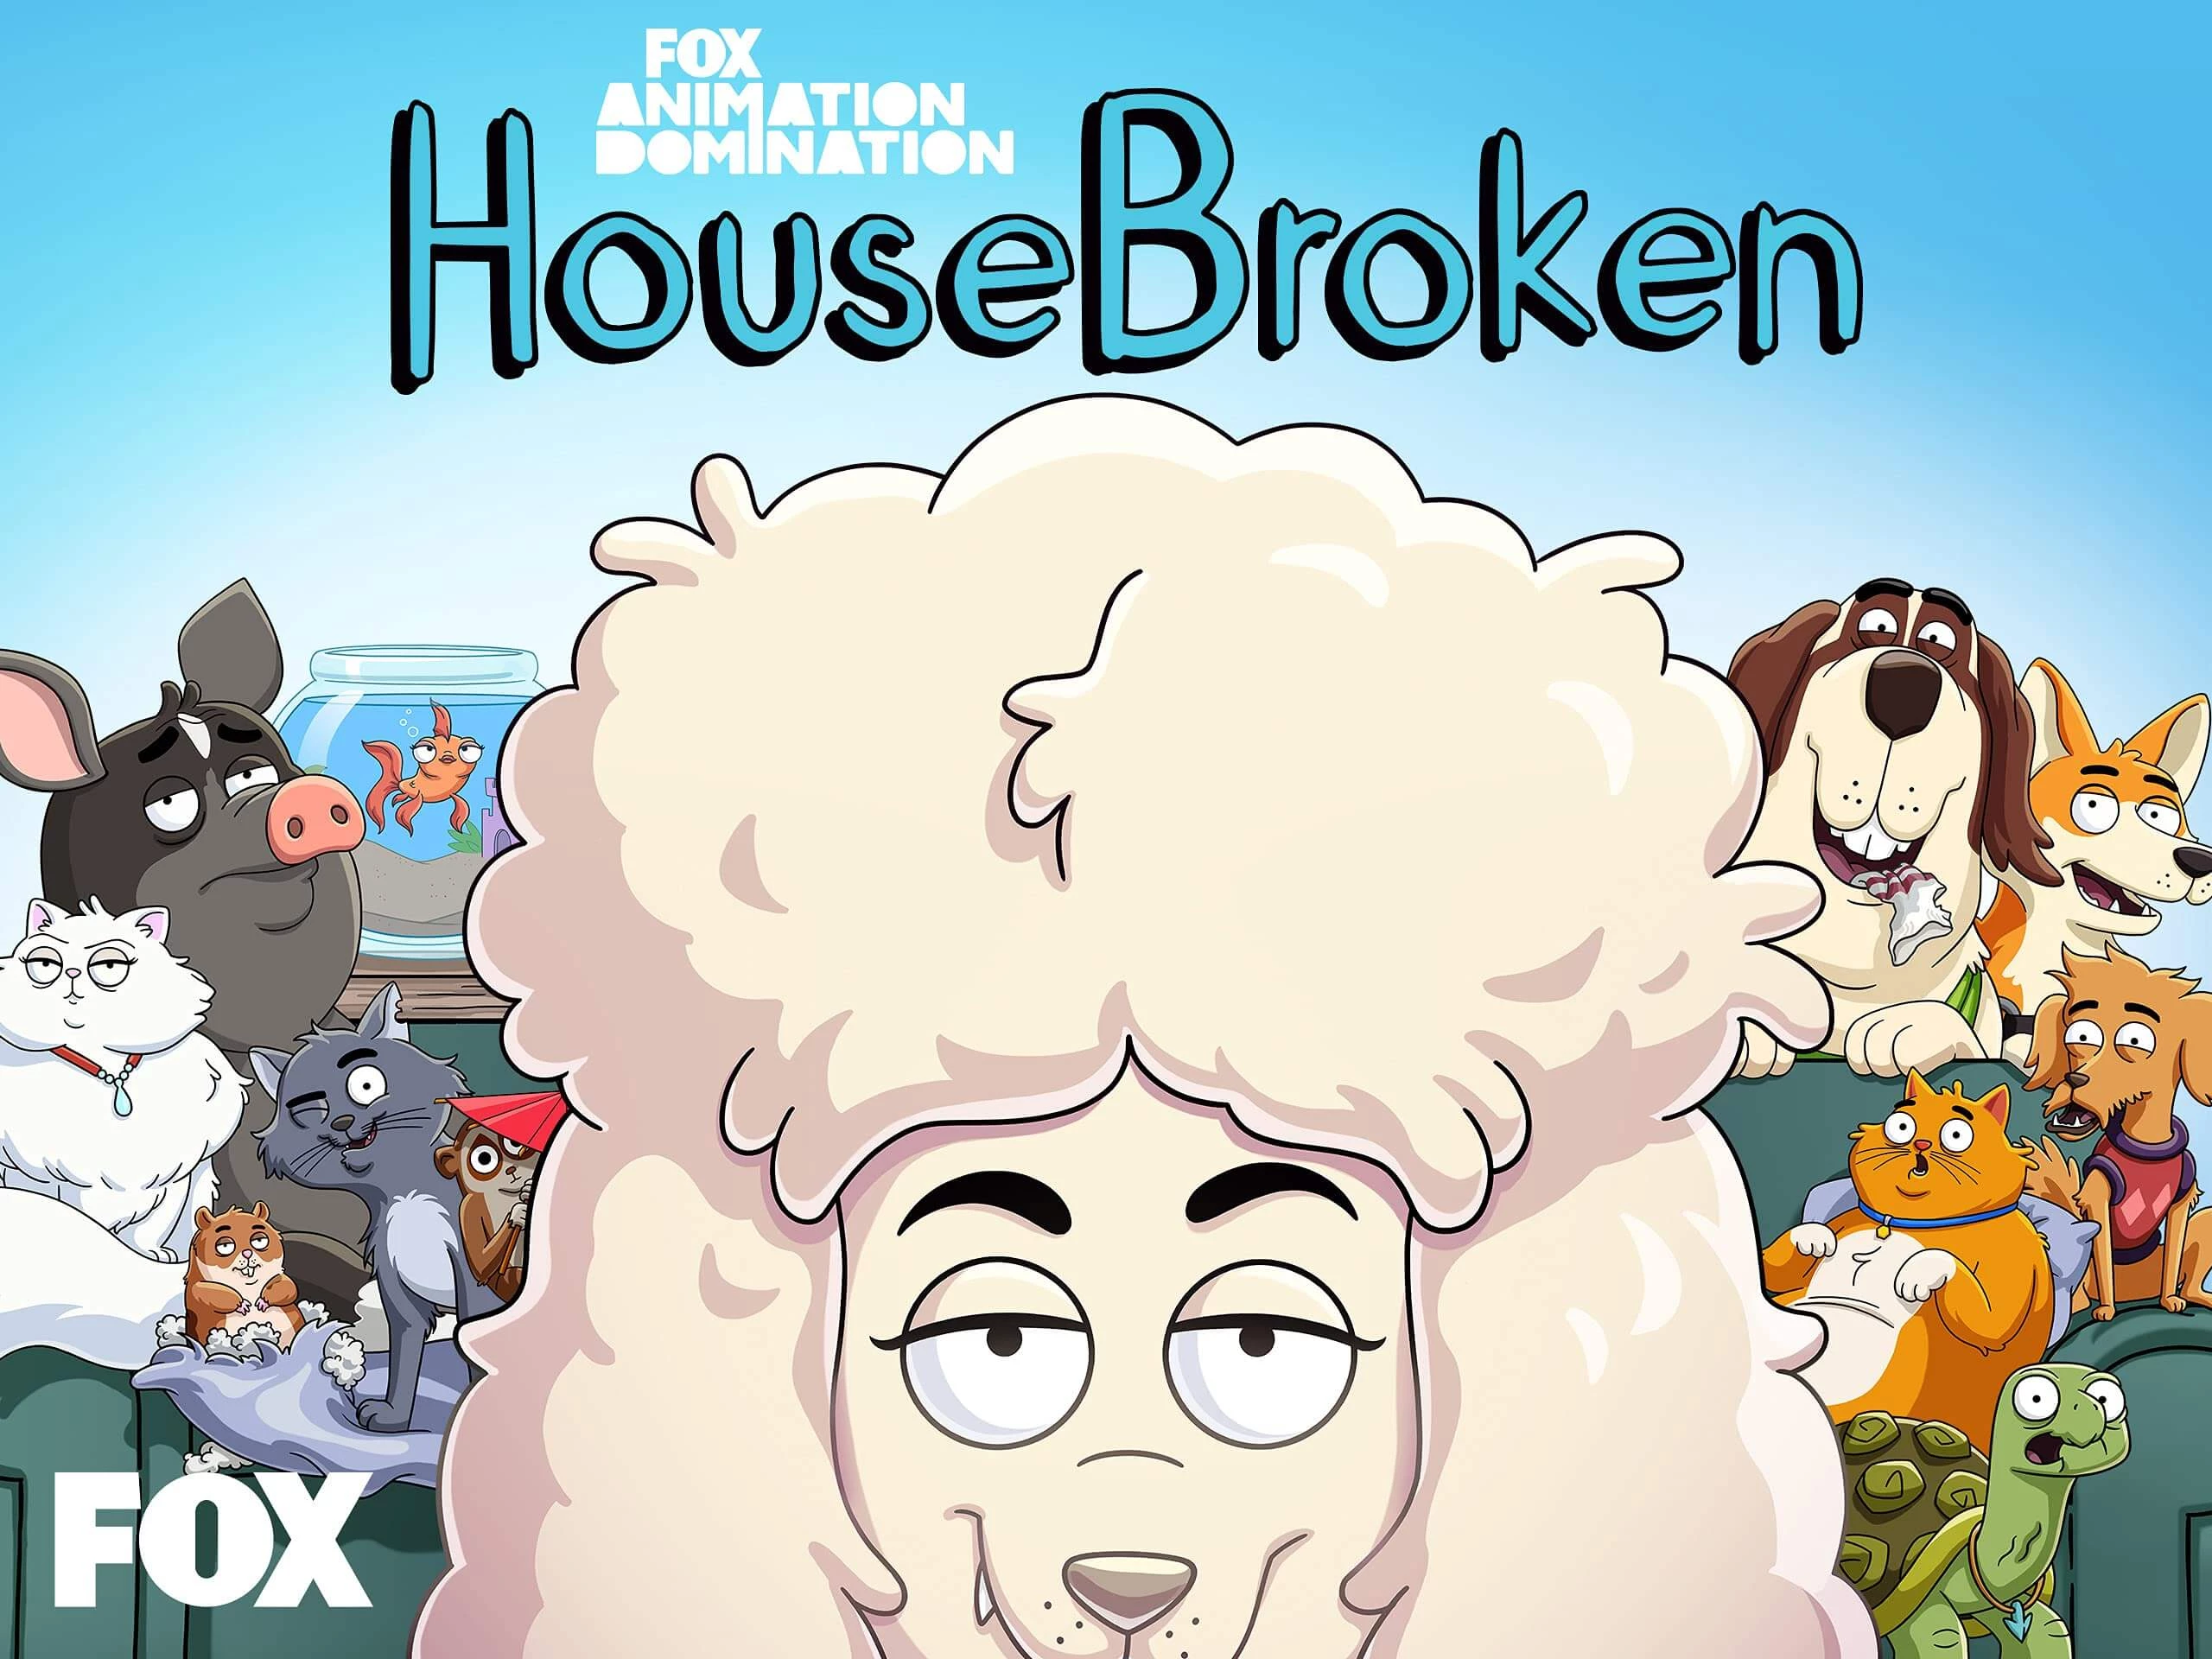 House broken